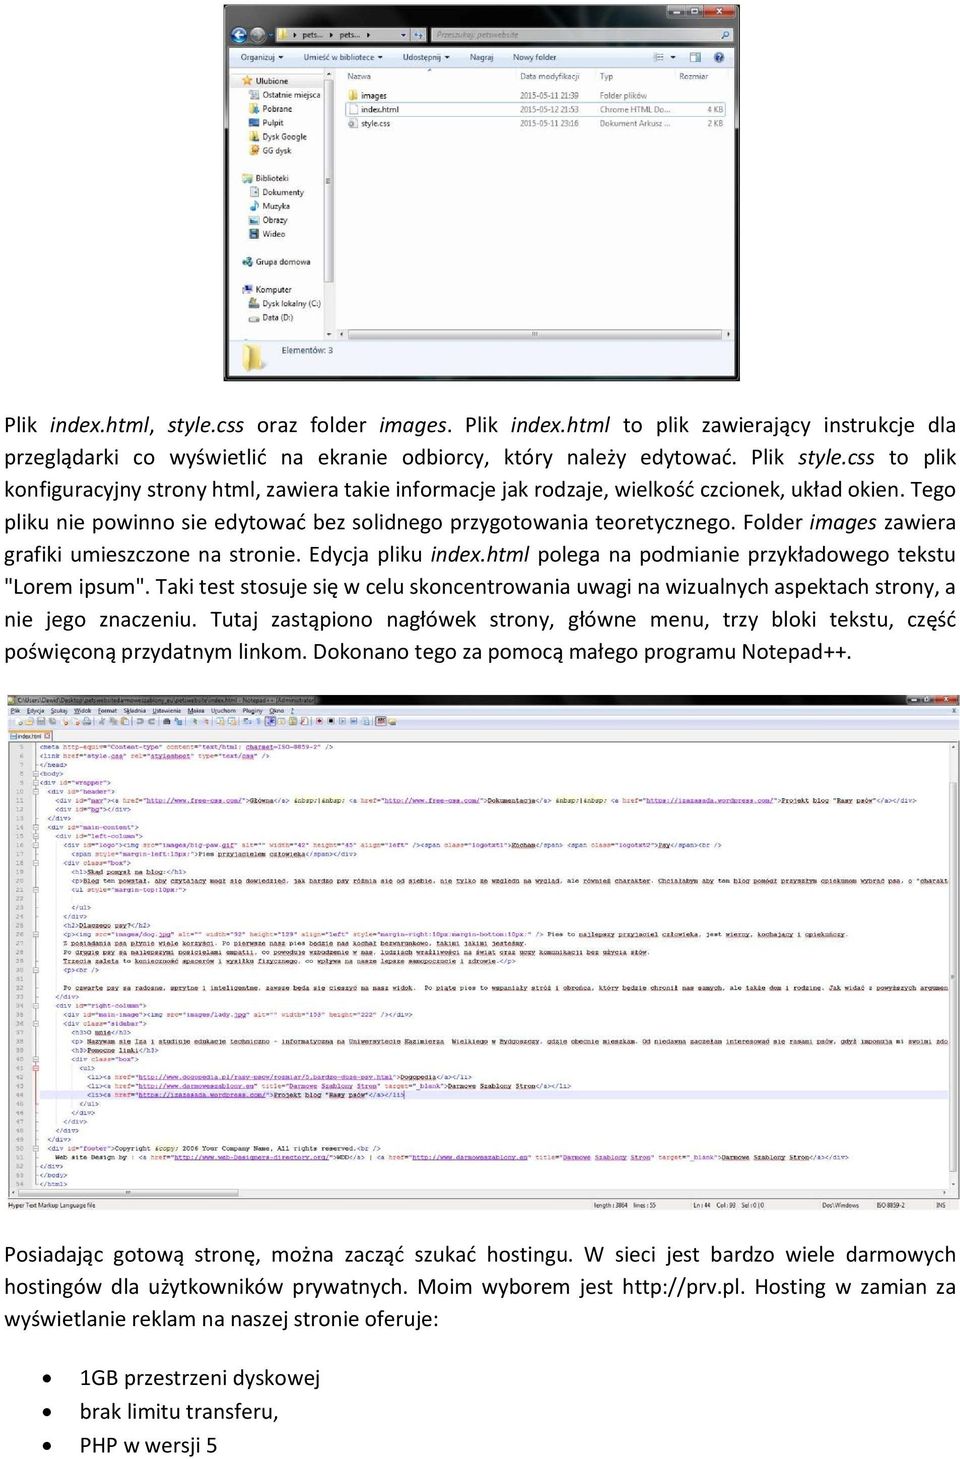 Folder images zawiera grafiki umieszczone na stronie. Edycja pliku index.html polega na podmianie przykładowego tekstu "Lorem ipsum".